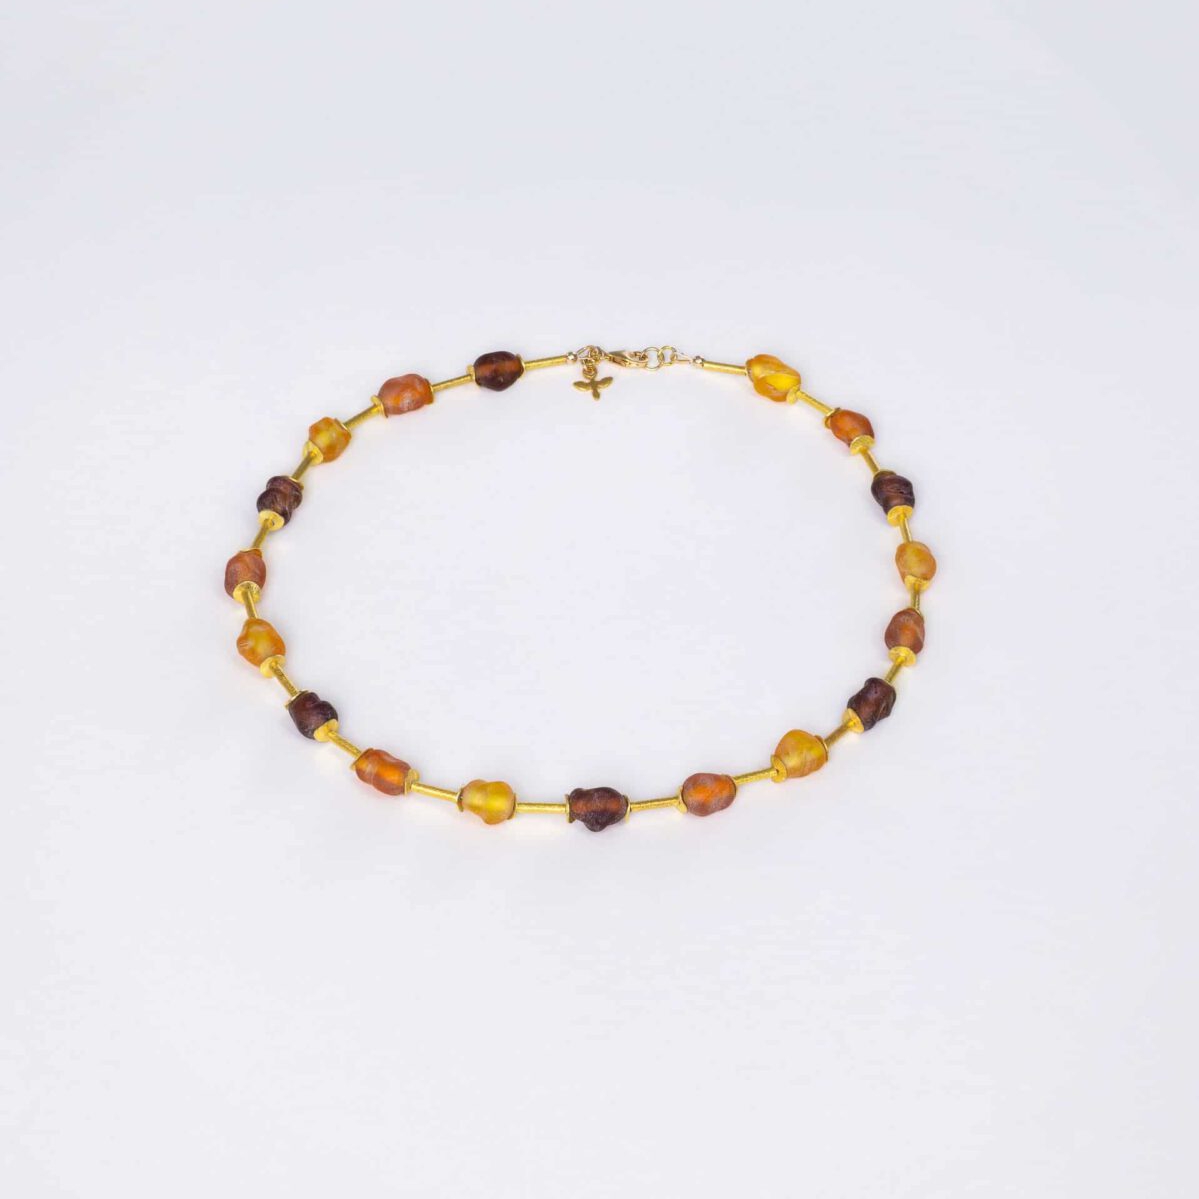 SAROCCA Glas Schmuck individuell nachhaltig Halskette orange braun gelb vergoldetes Silber